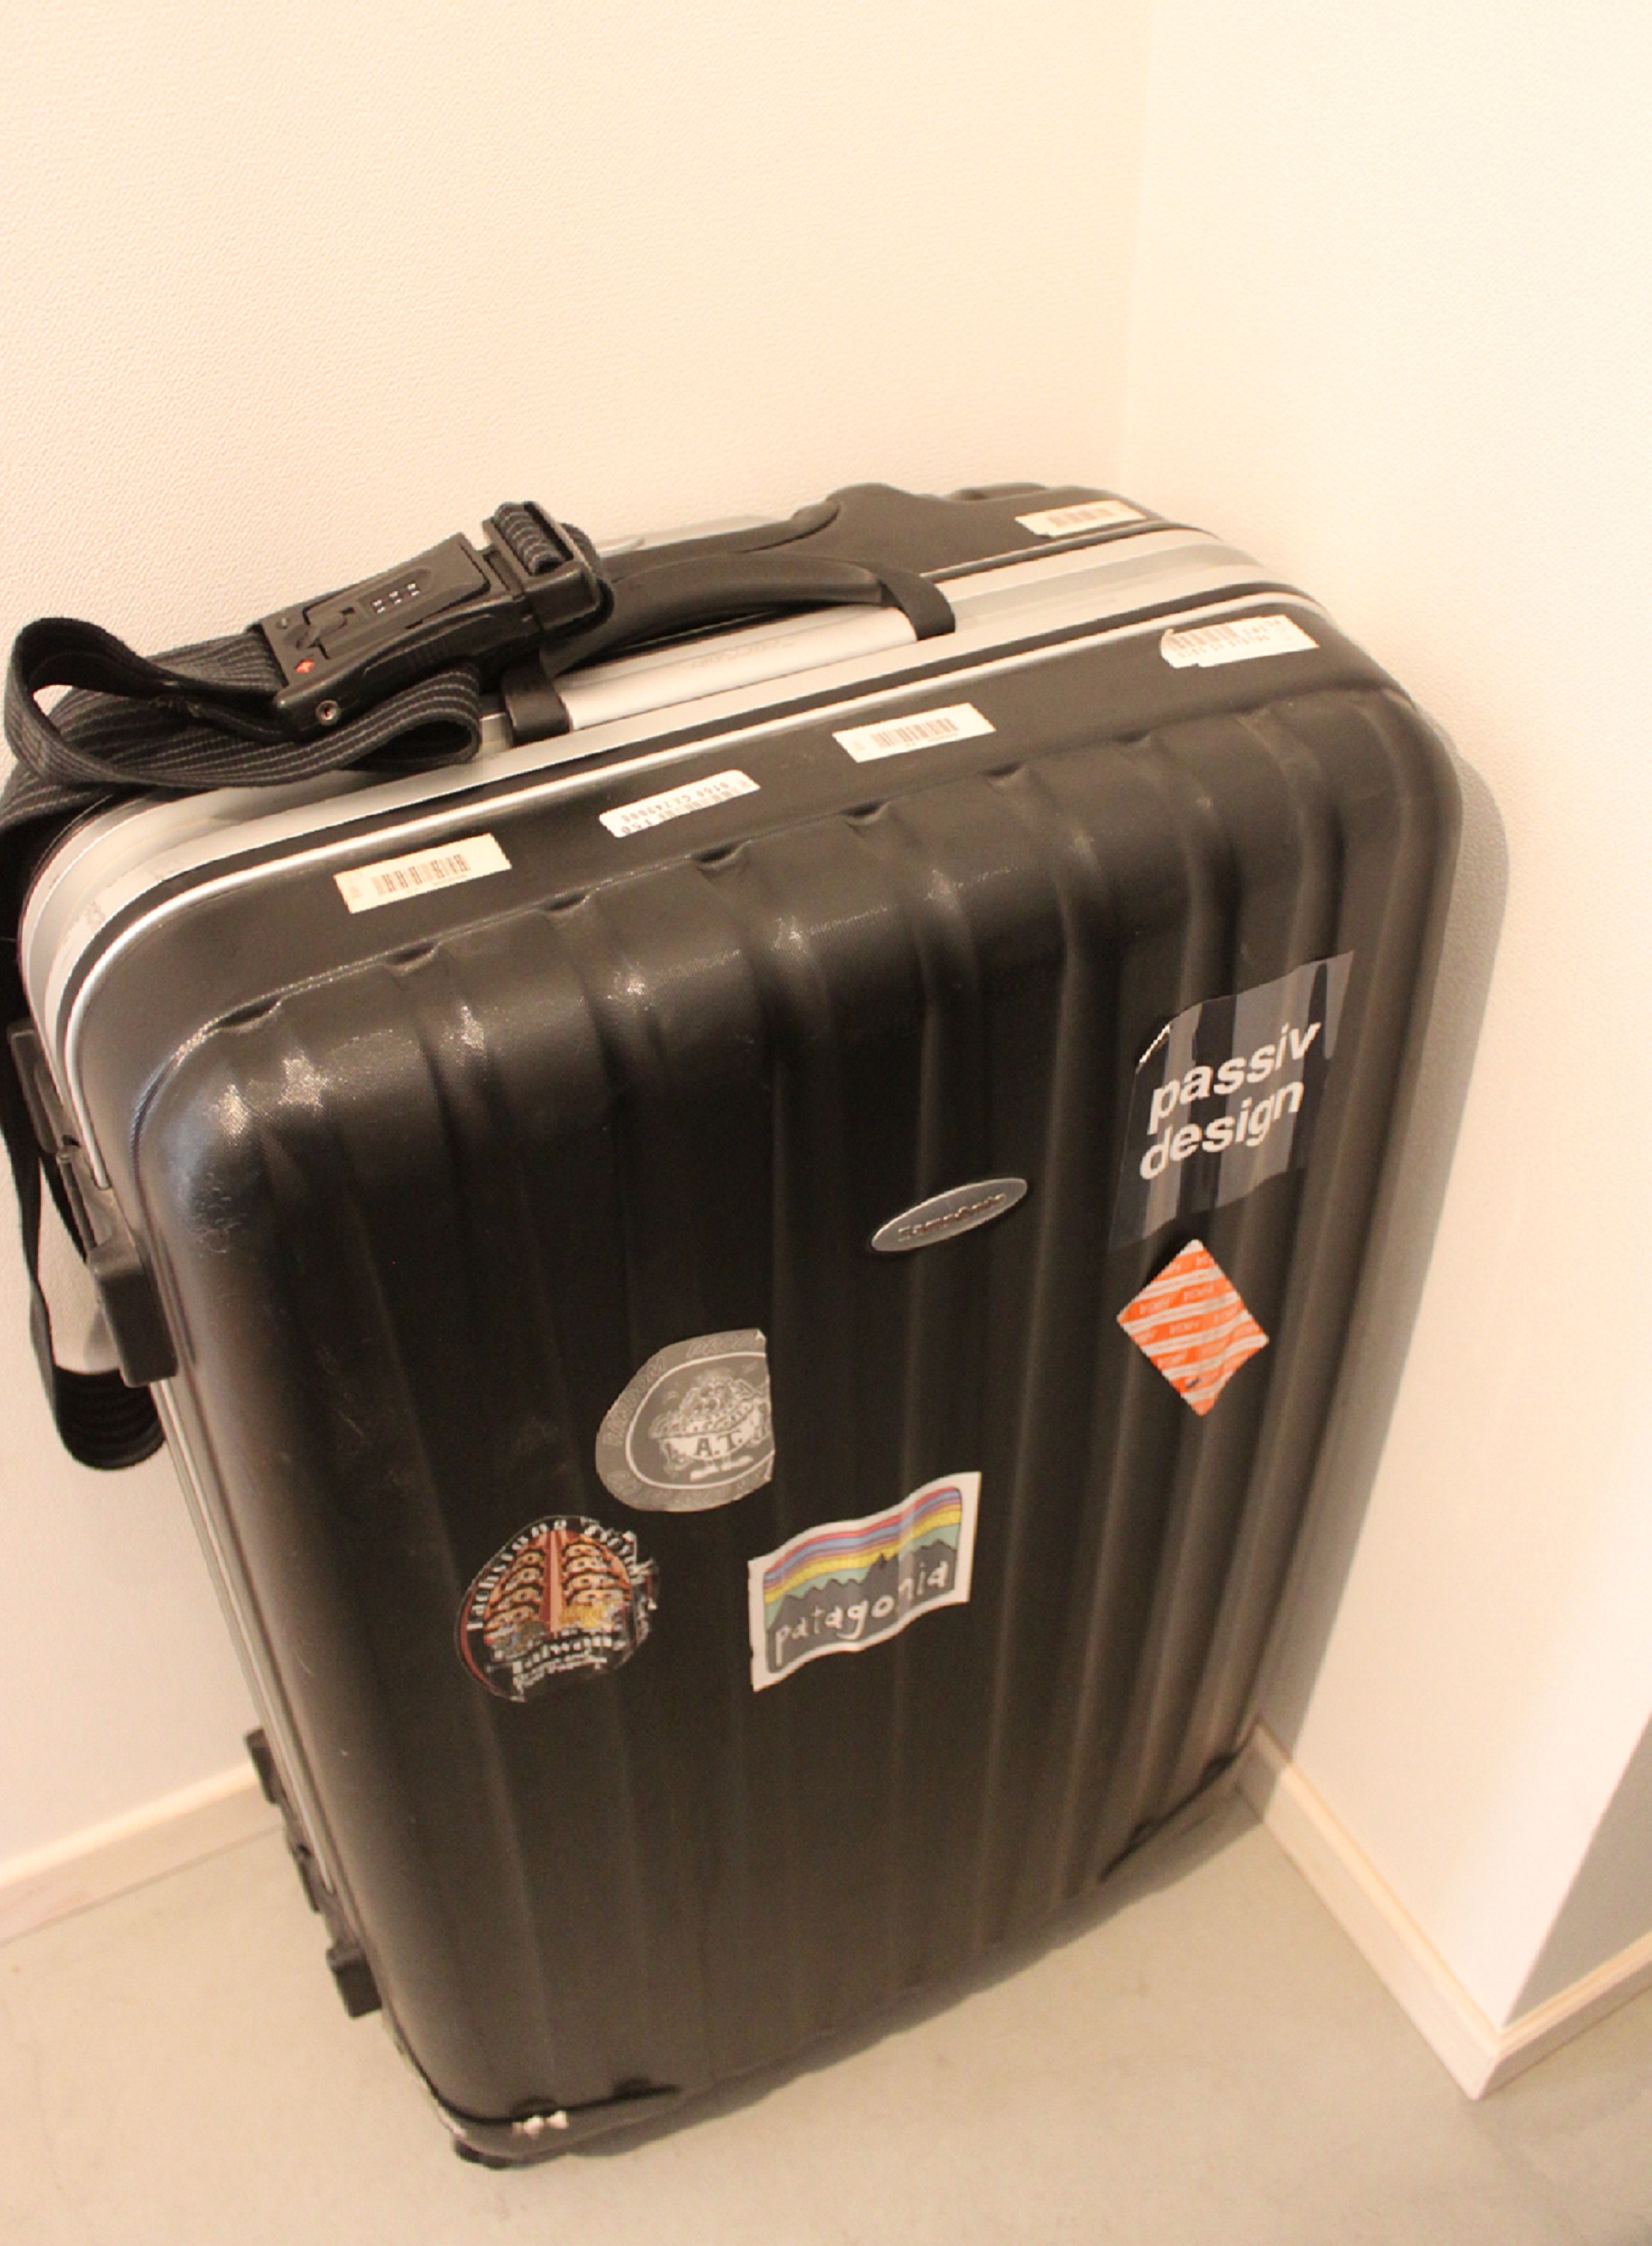 K様のスーツケースと共に、“passiv design”のステッカーが海外を廻る！！